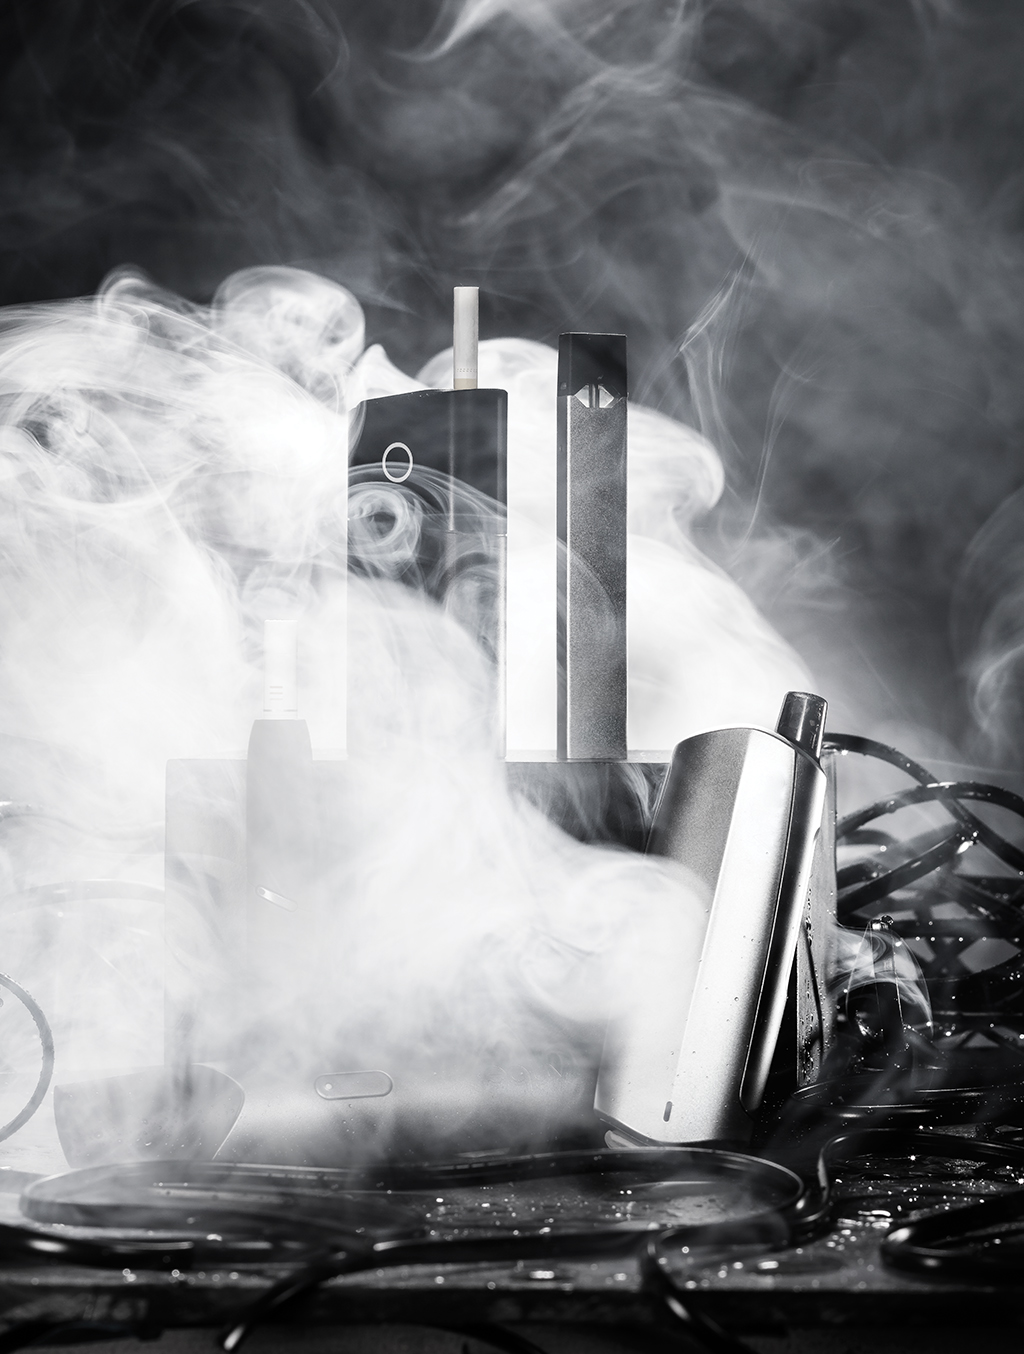 Pesquisas recentes mostram que o vapor de nicotina dos eletrônicos causa câncer de pulmão em ratos de laboratório.